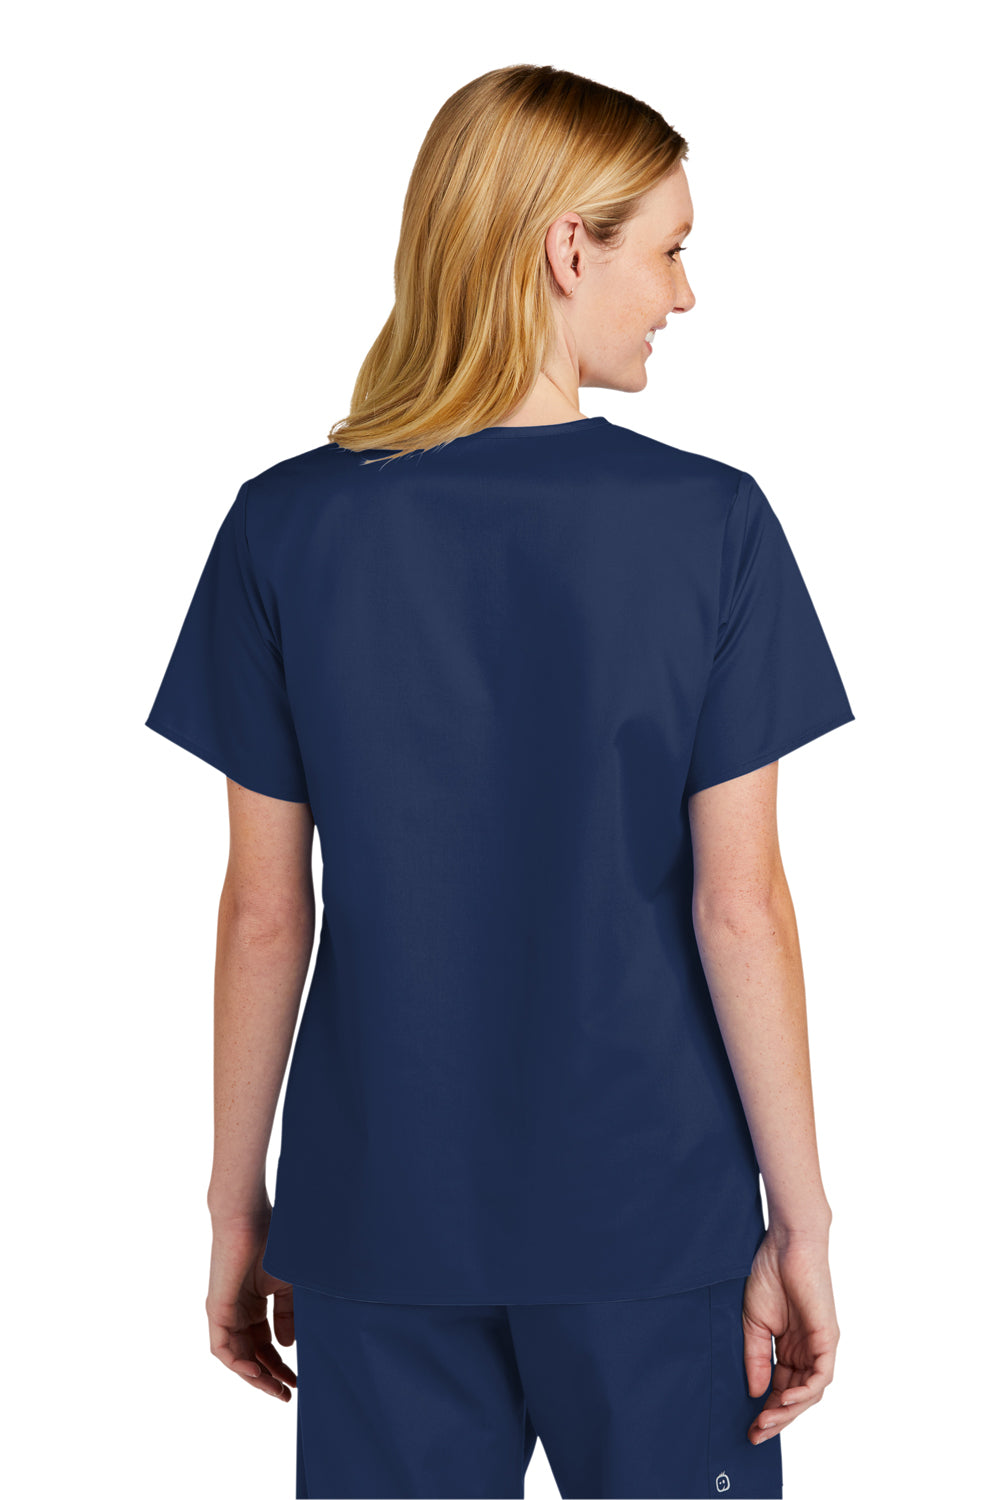 Wonderwink WW4560 WorkFlex Short Sleeve V-Neck Shirt Navy Blue Back